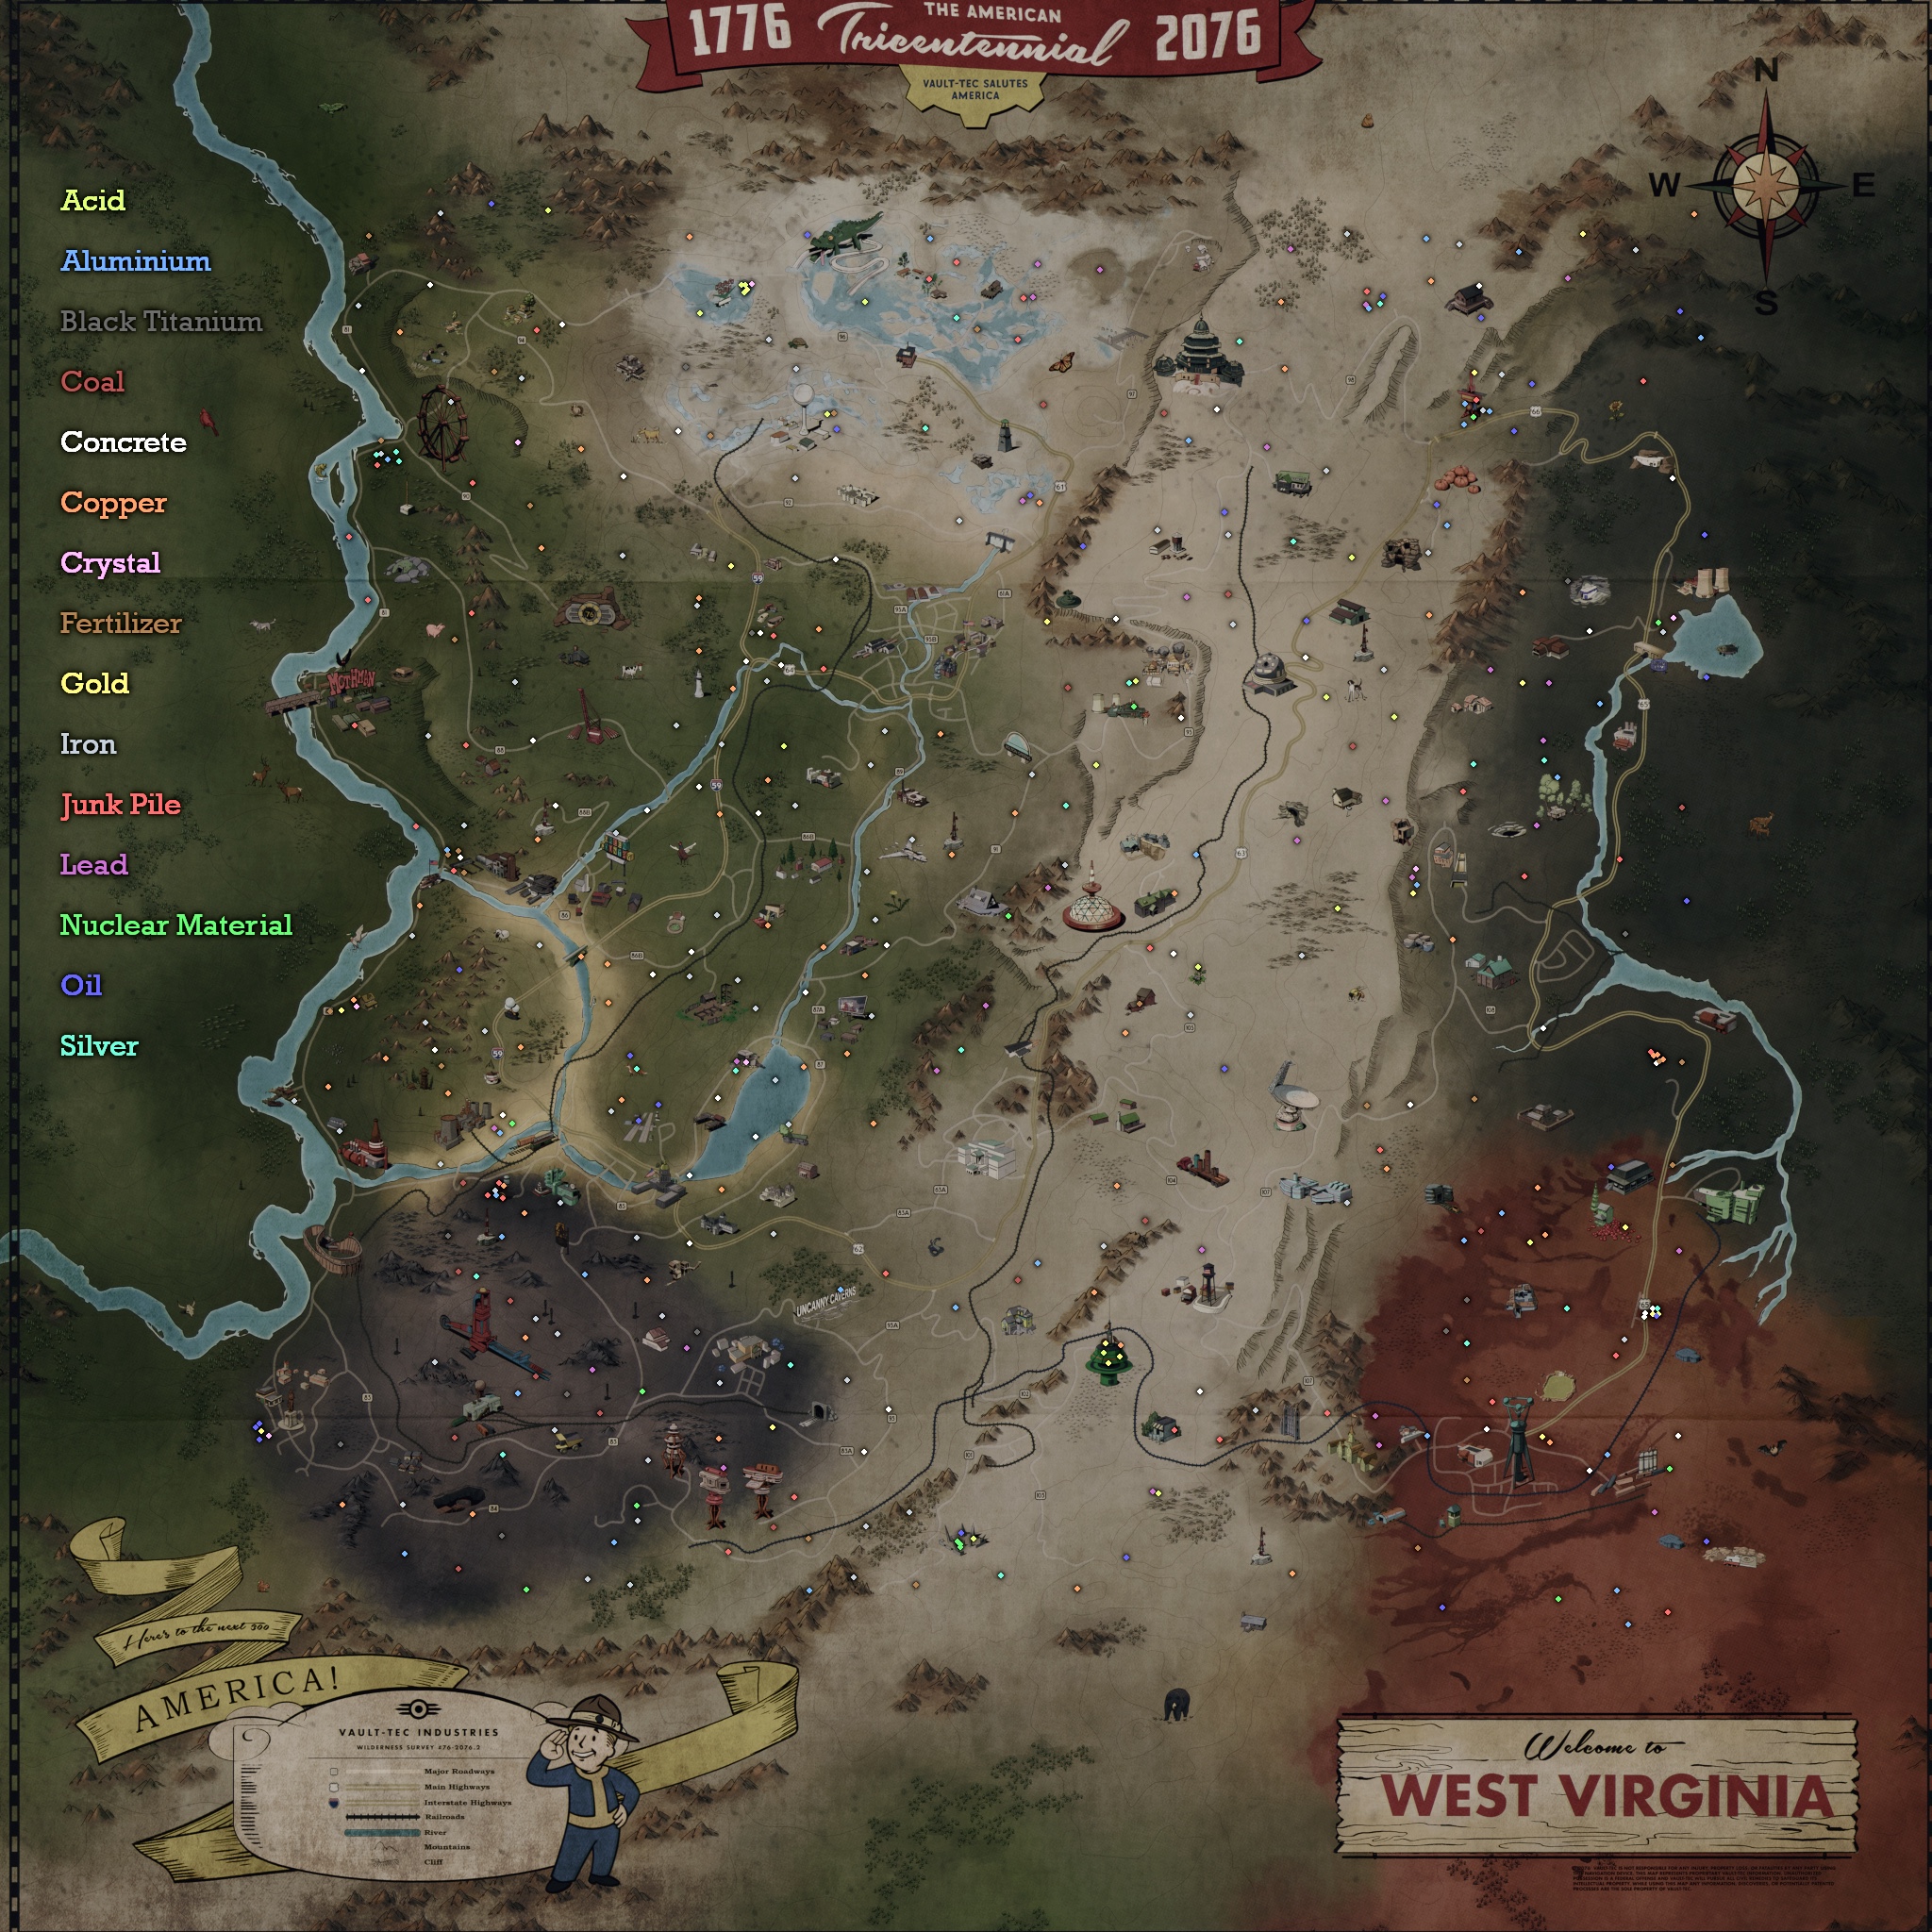 fallout 76 map